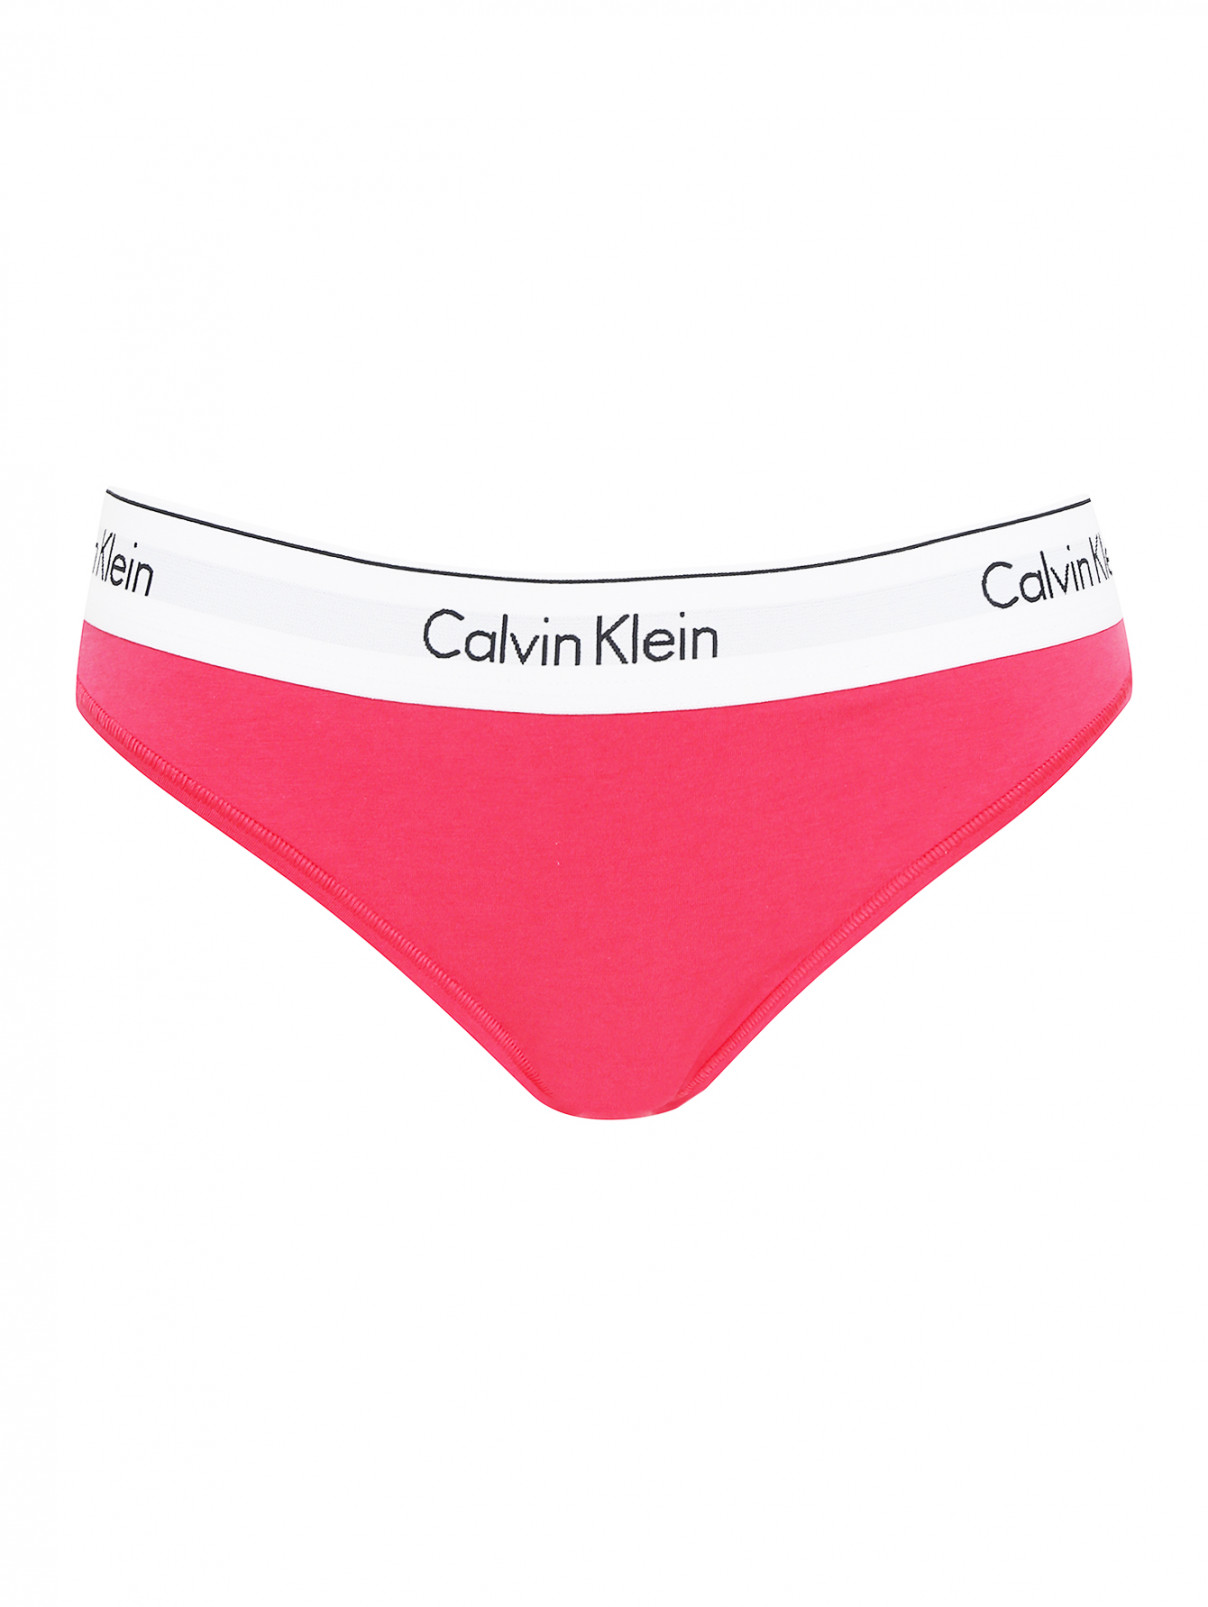 Трусы из хлопка с контрастной резинкой Calvin Klein  –  Общий вид  – Цвет:  Розовый